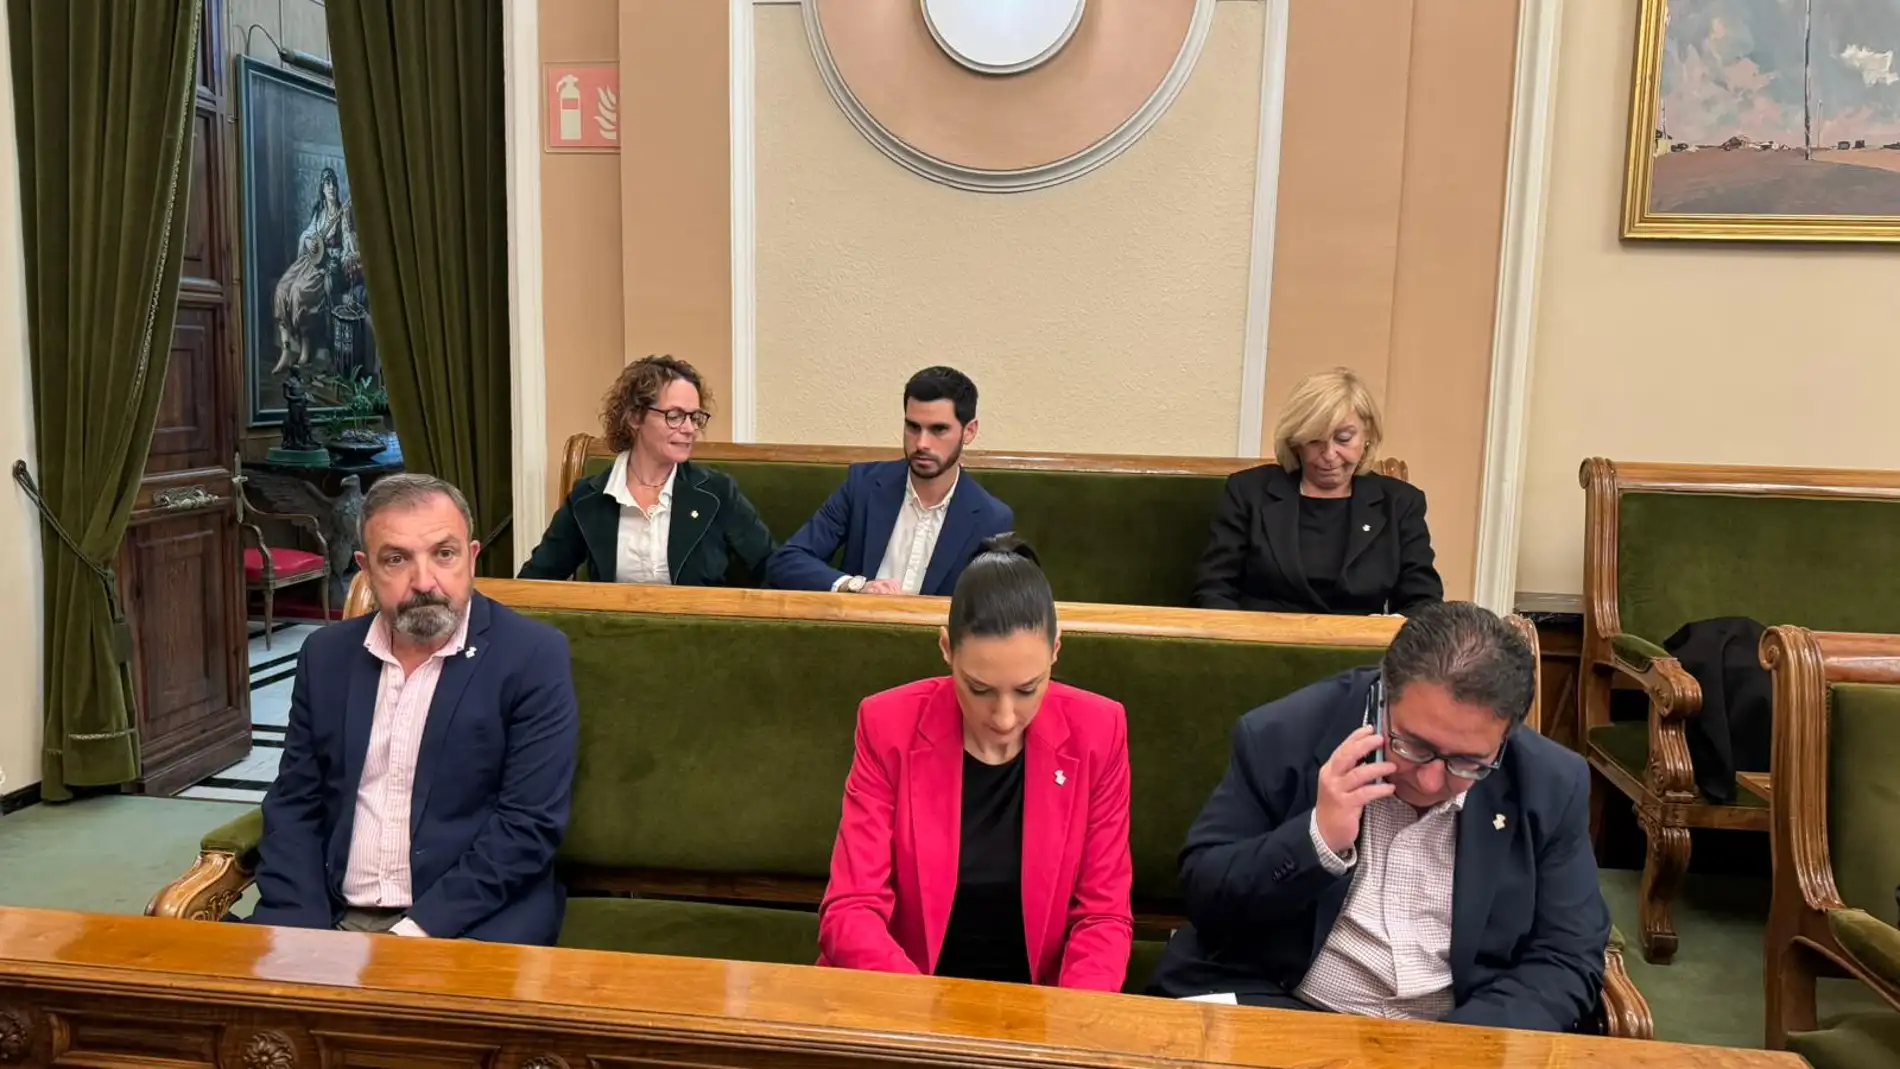 El concejal de Movilidad de Castelló, Cristian Ramírez, no dimite, pide perdón y dice que "ya ha pagado todas las multas de la zona azul"